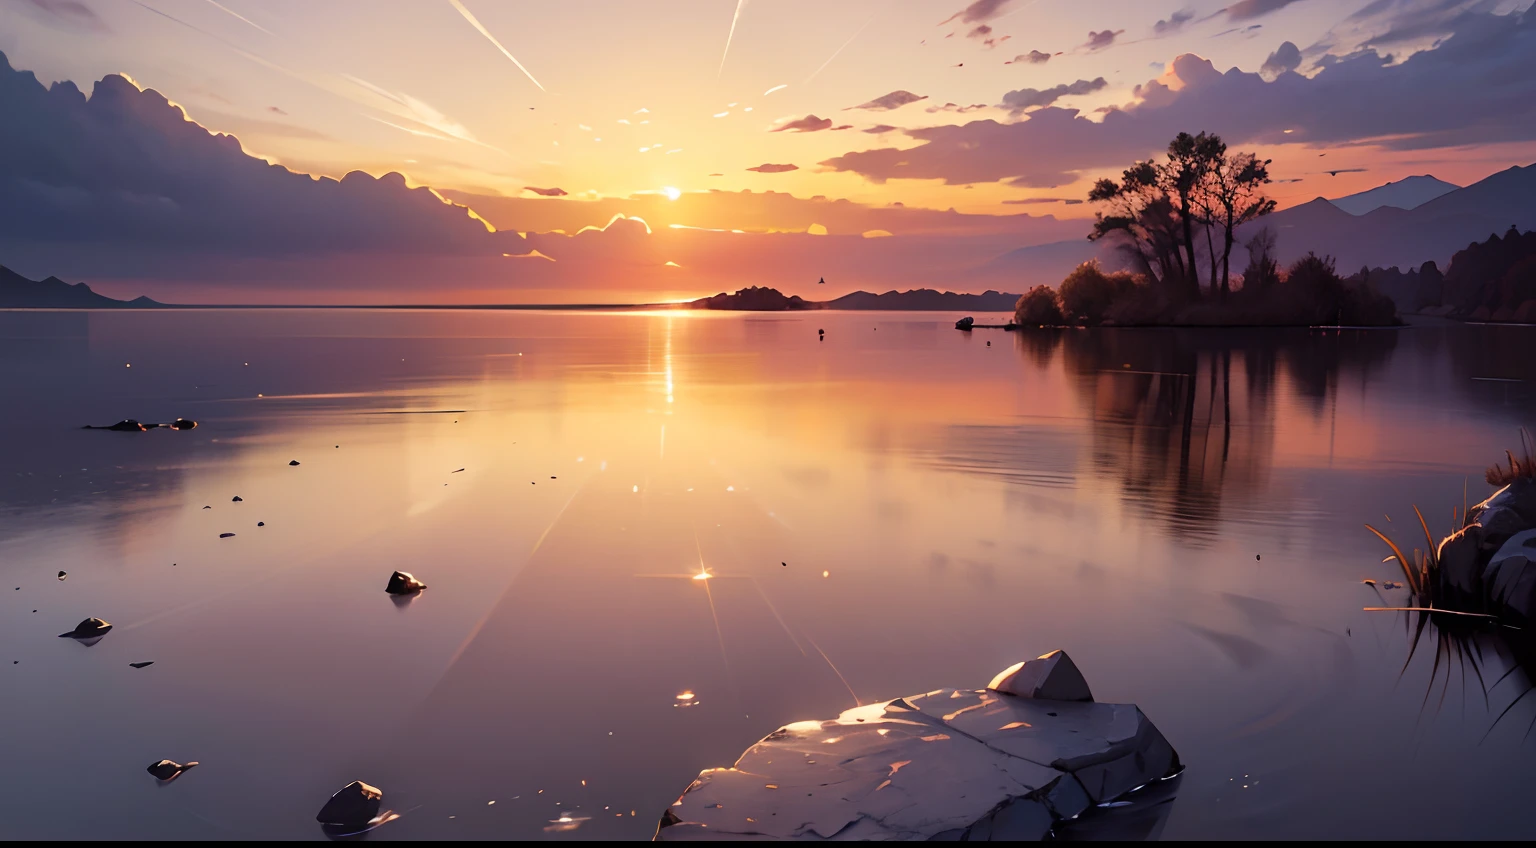 Image, das einen strahlenden Sonnenaufgang über einer ruhigen und heiteren Landschaft zeigt